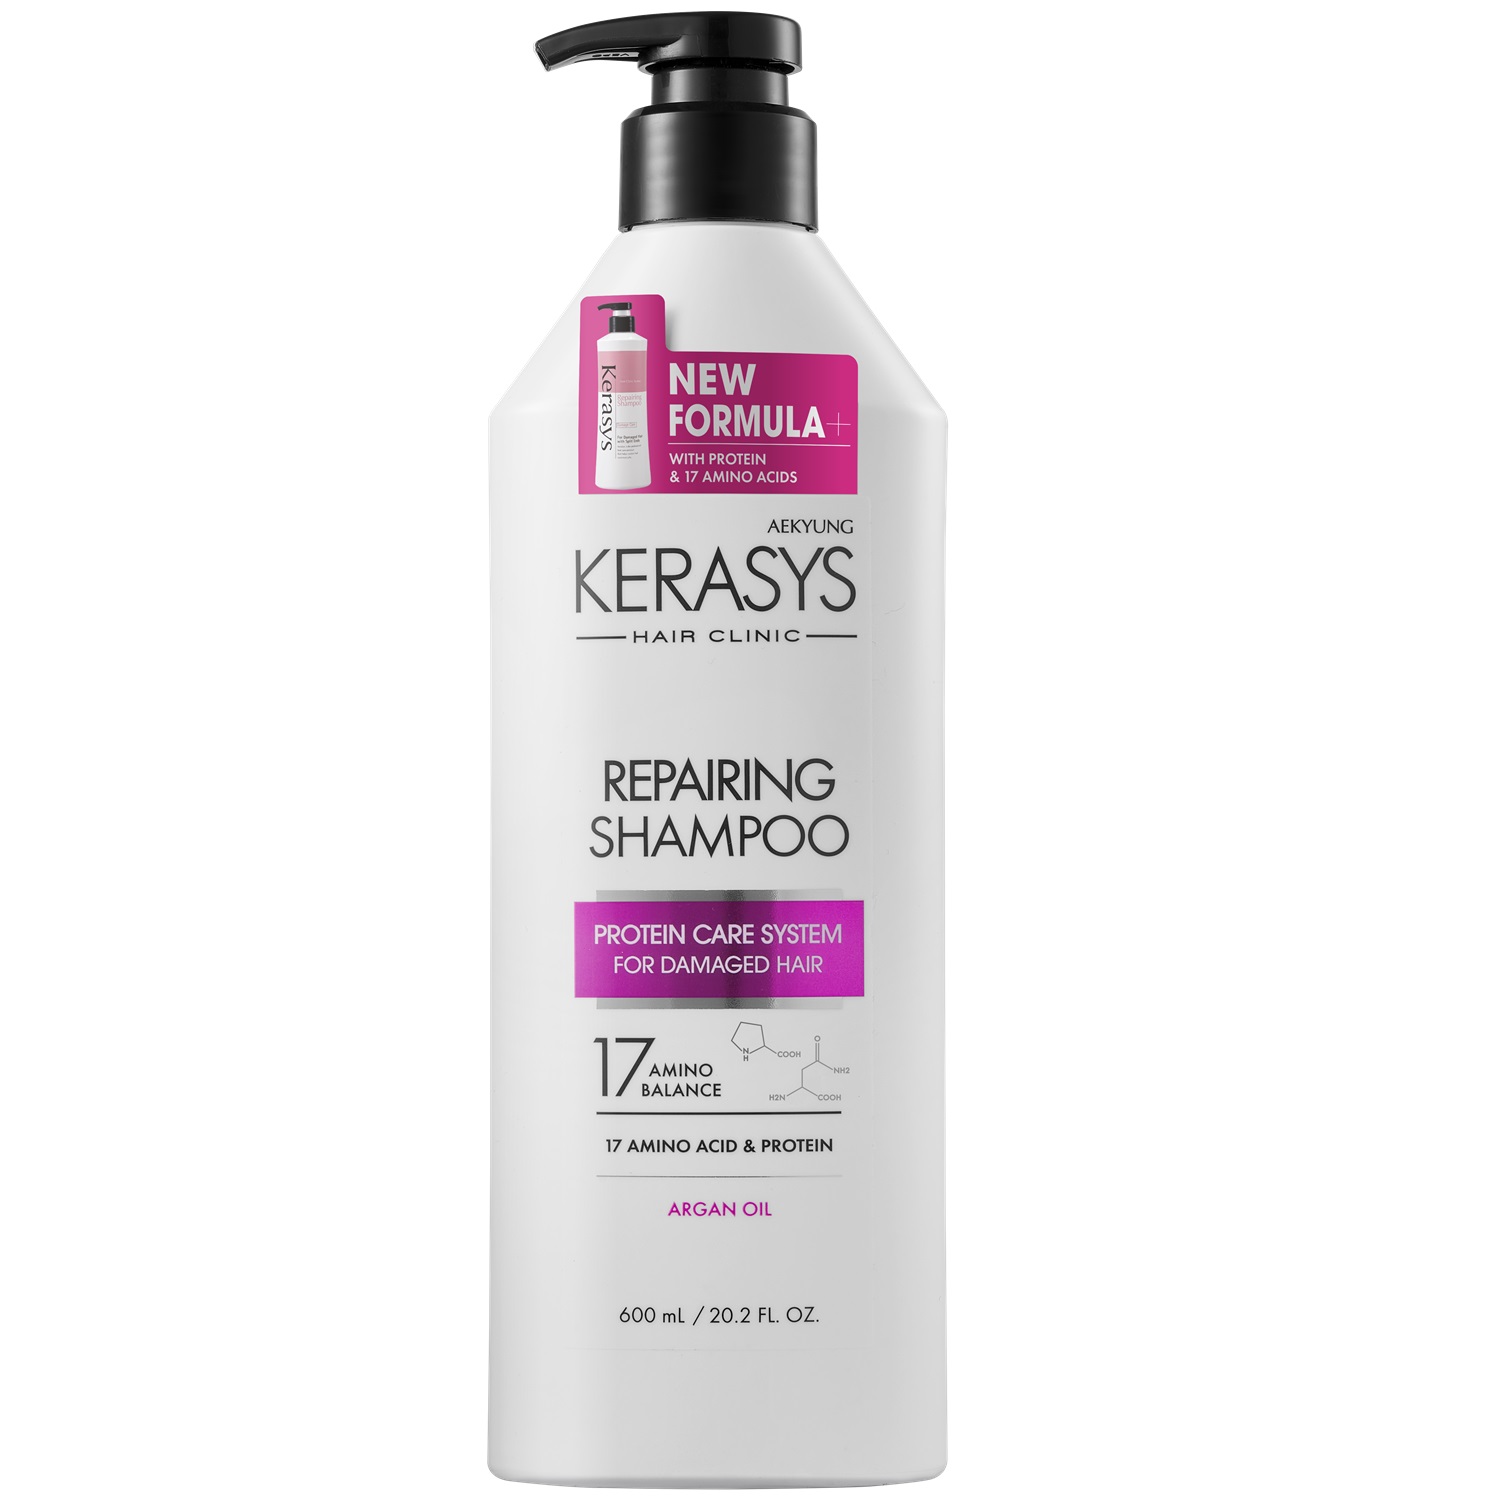 Kerasys Шампунь KeraSys для восстановления сильно поврежденных волос 600 мл (Kerasys, ) цена и фото